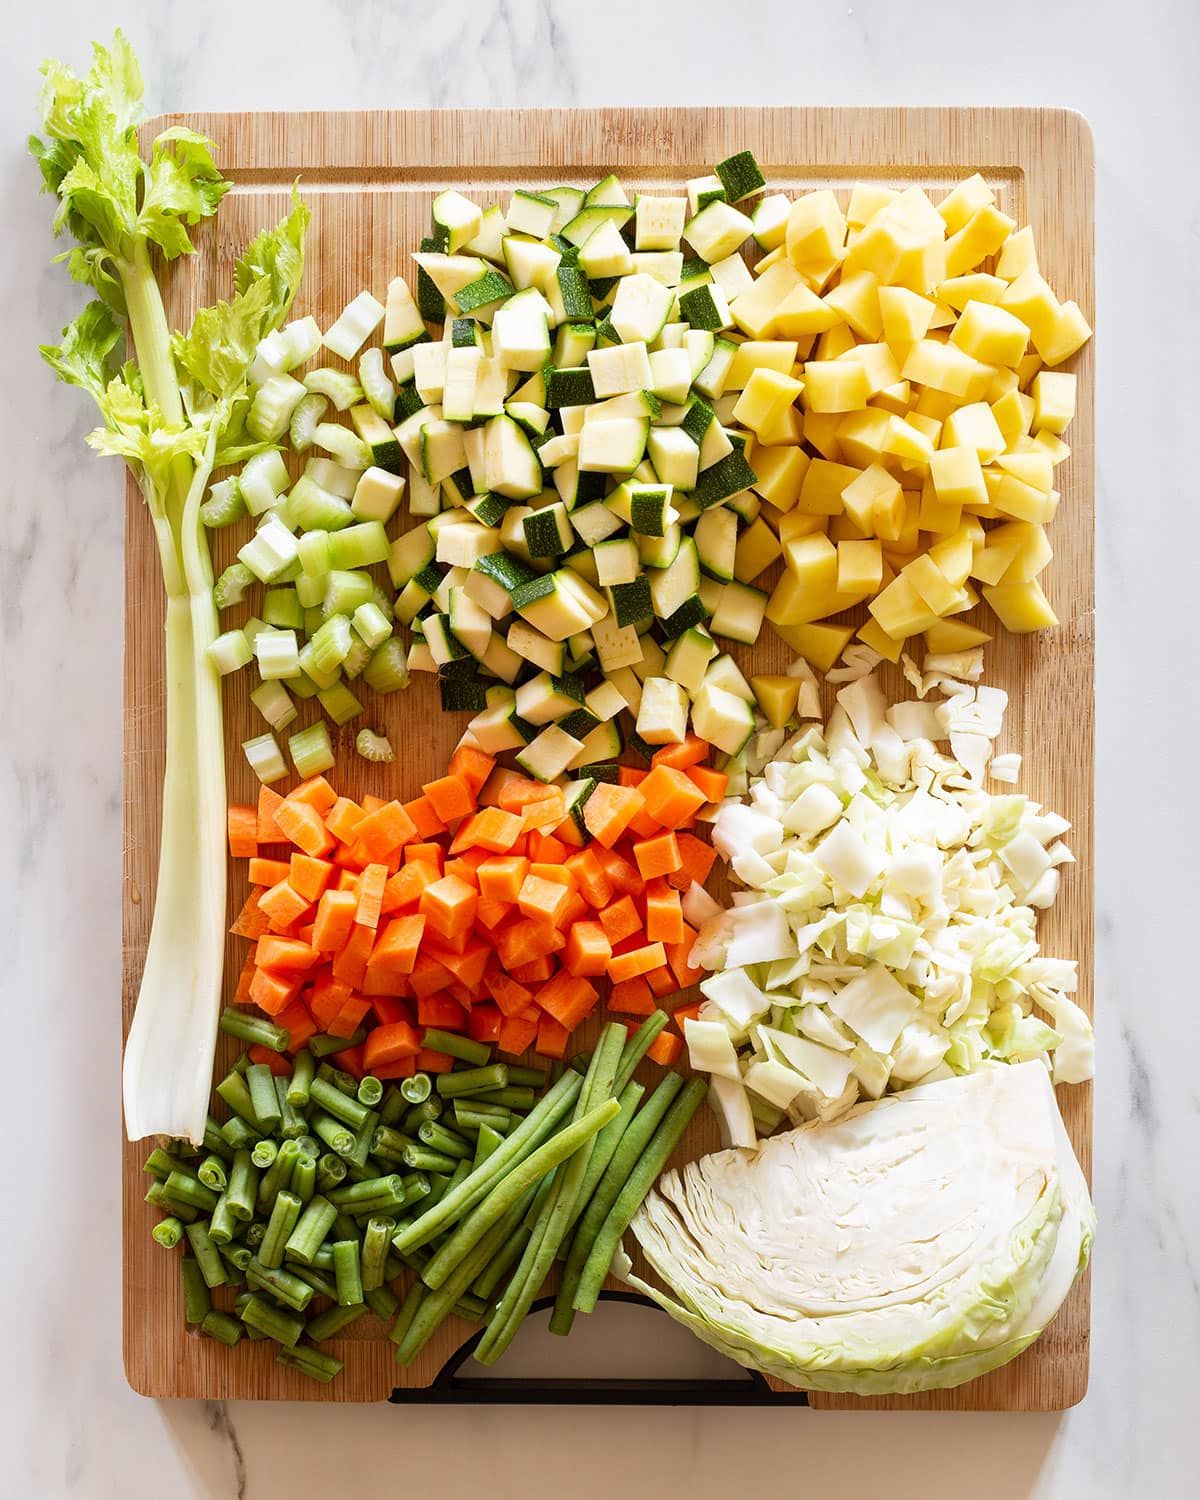 No es saludable comer mucha verdura